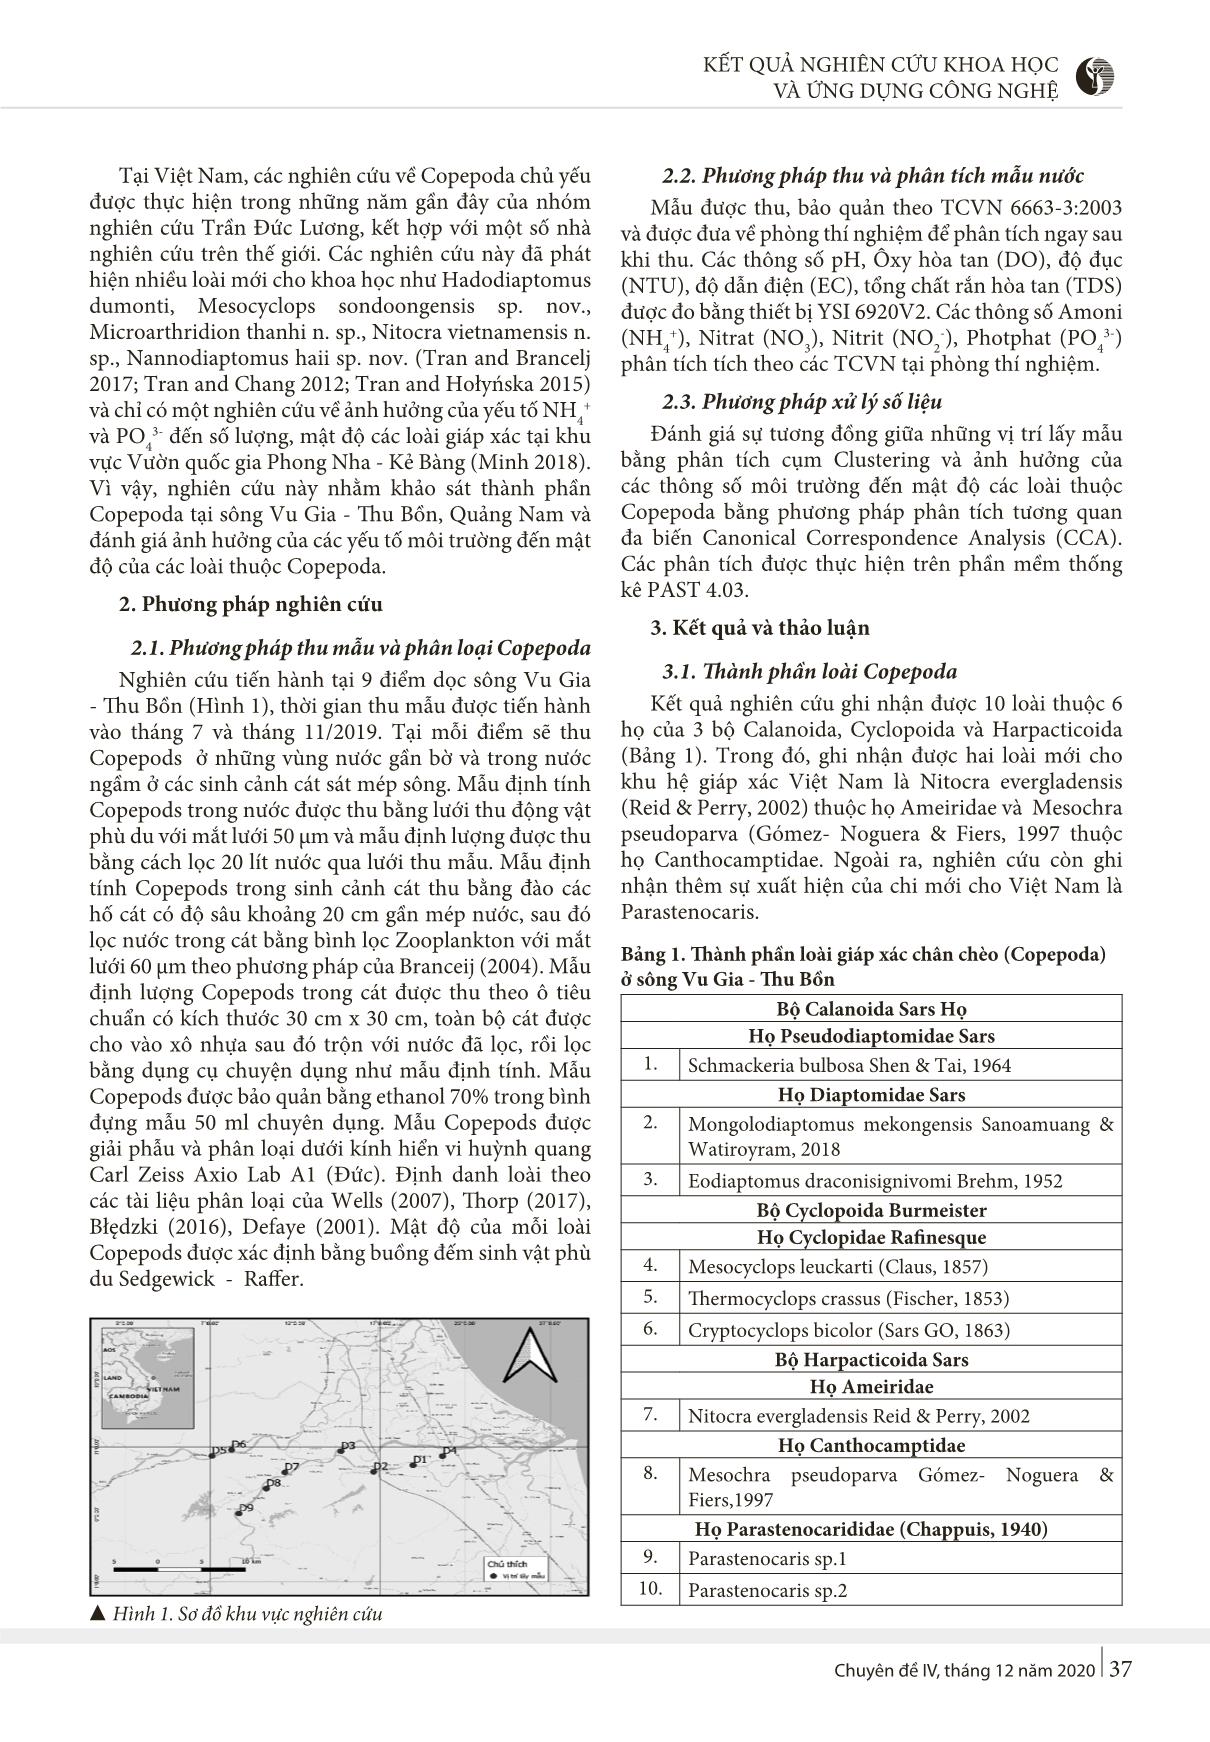 Nghiên cứu thành phần phân lớp giáp xác chân chèo (Copepoda) tại sông Vu Gia - Thu Bồn, Quảng Nam trang 2